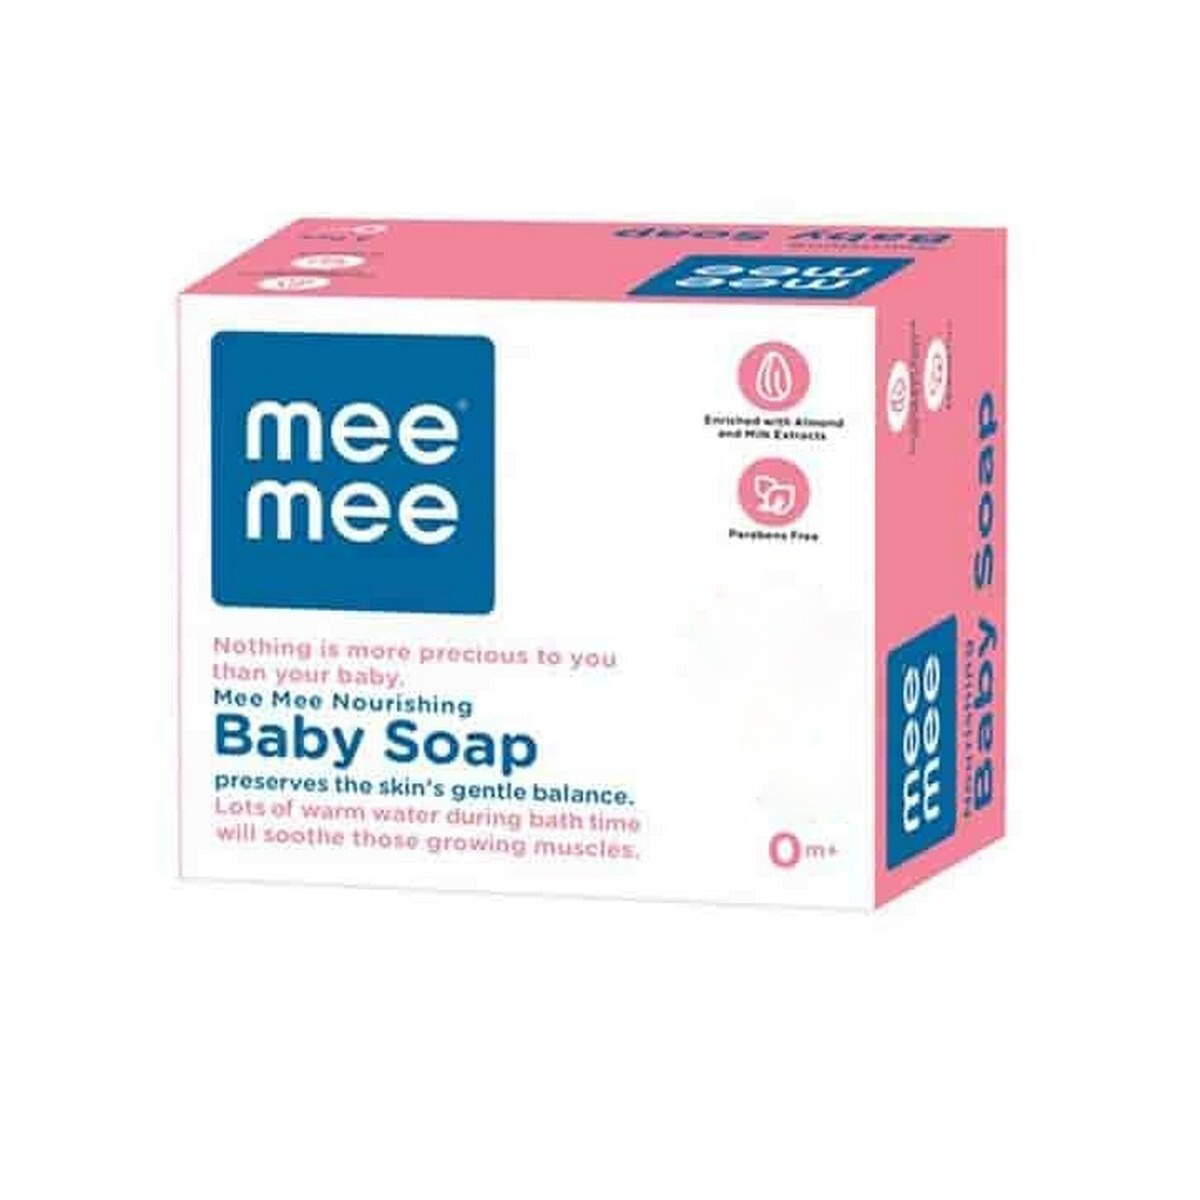 MeeMee  Baby Soap MM-1200